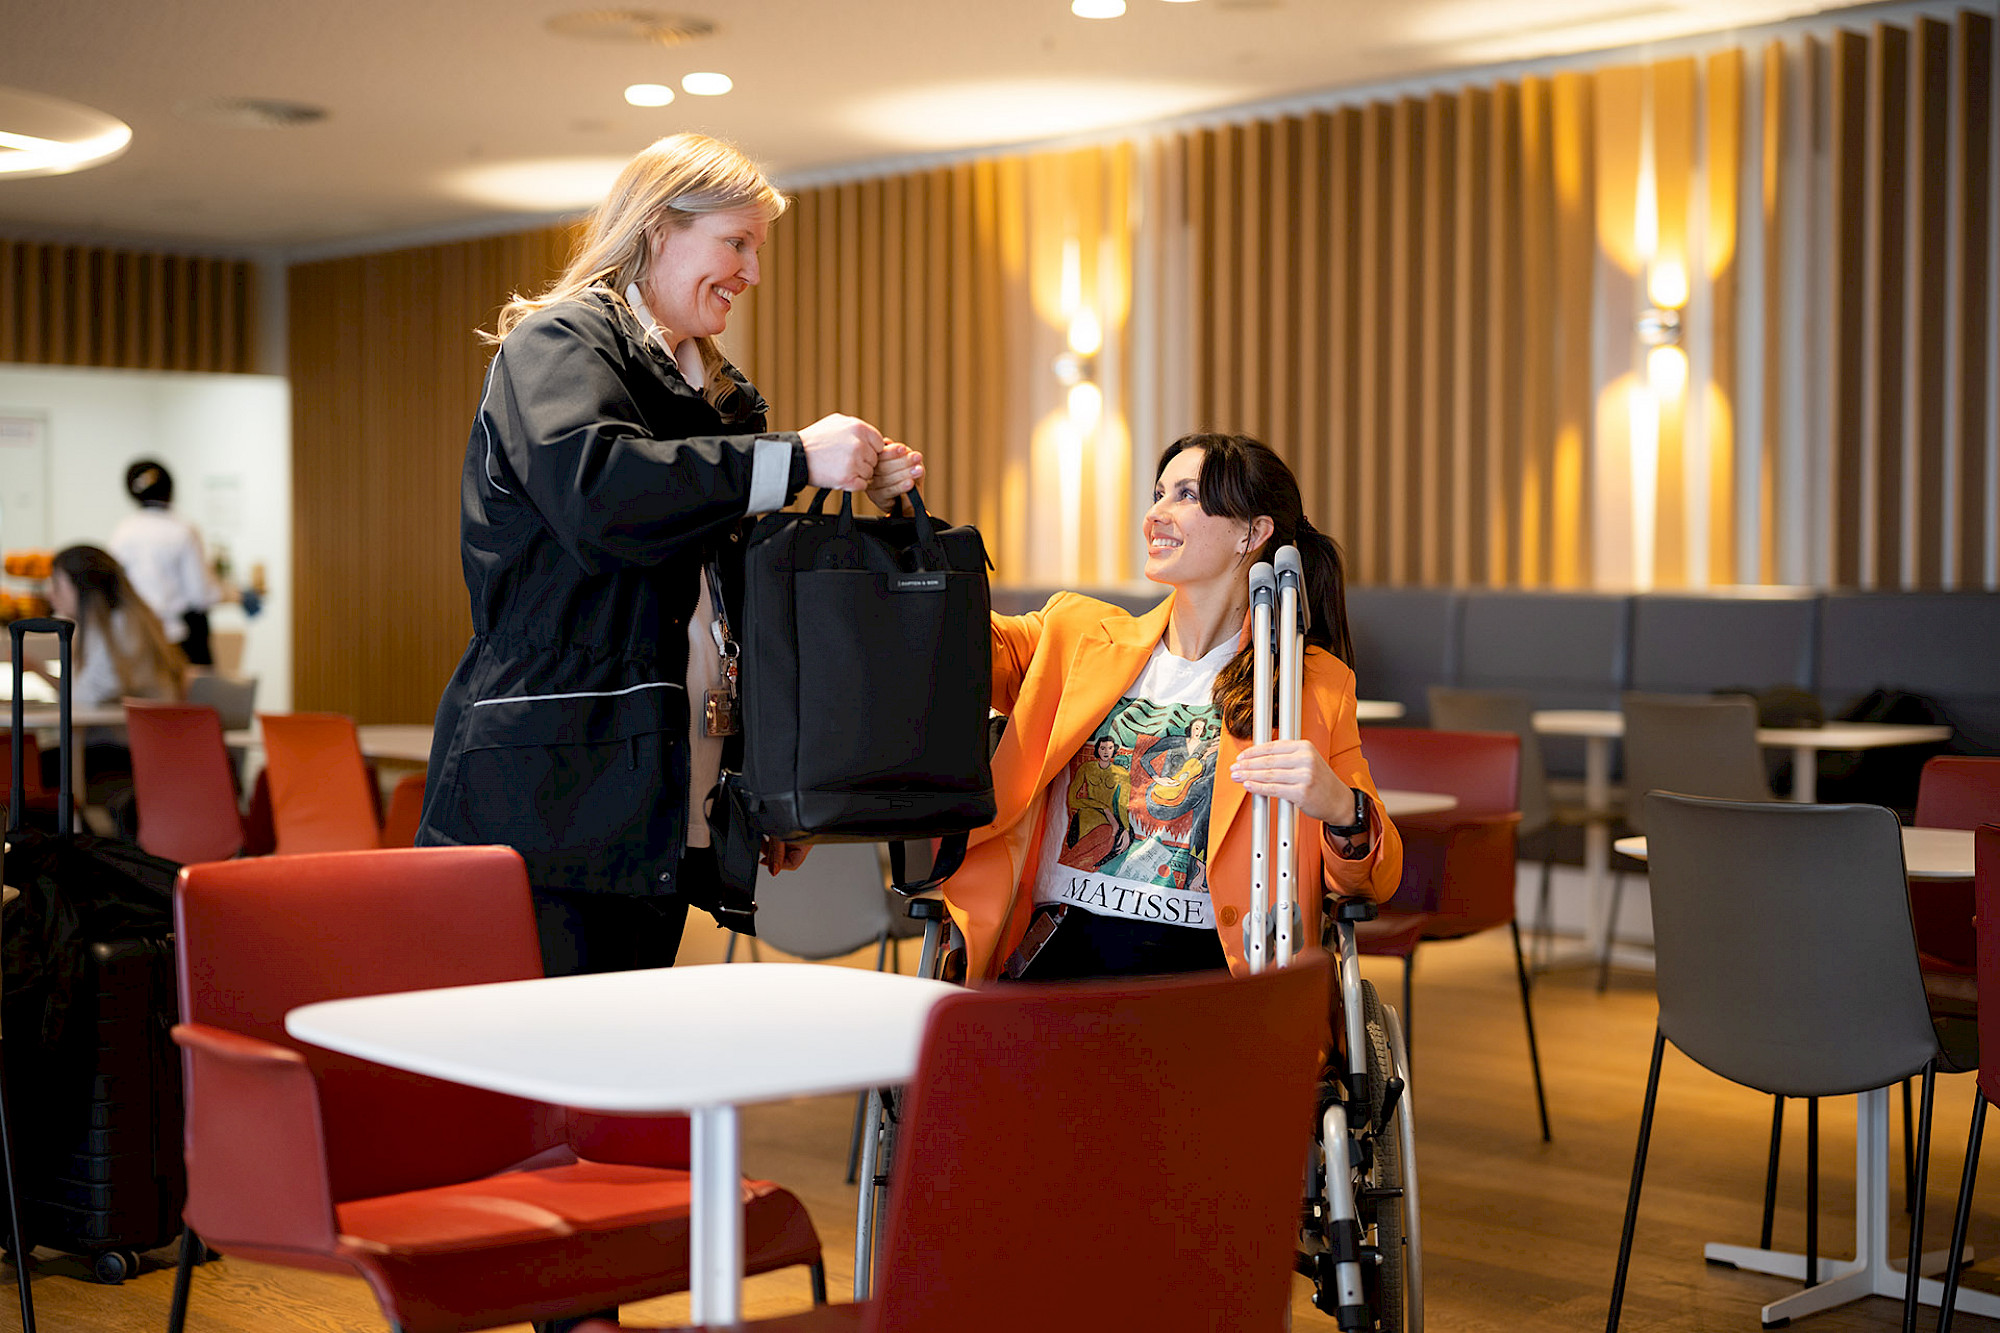 Service Agent nimmt junger Frau im Rollstuhl eine schwere Tasche ab.